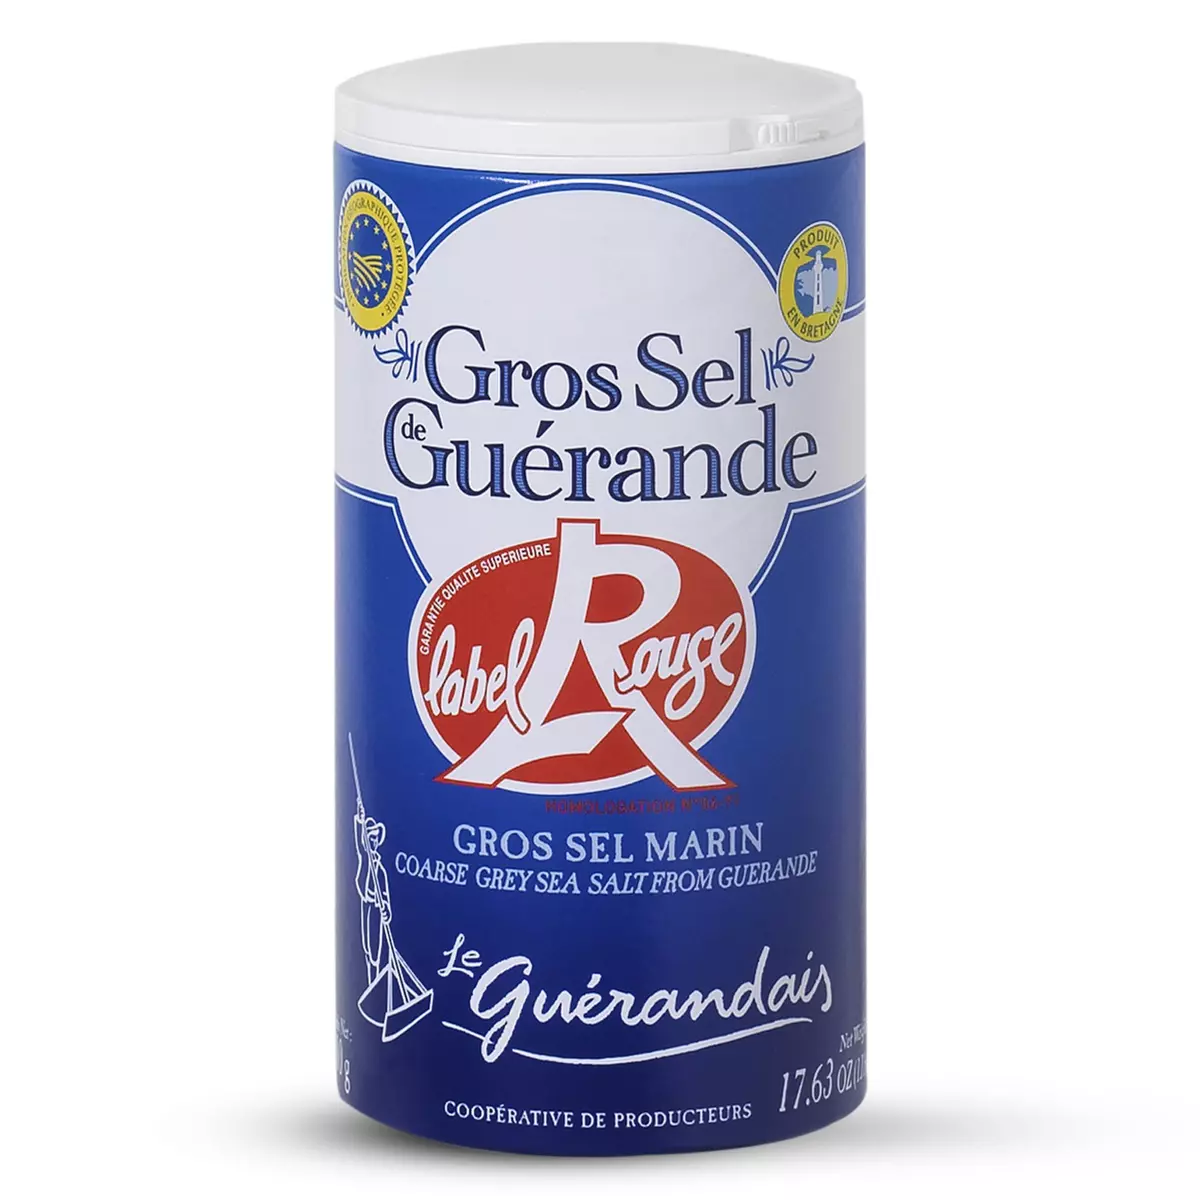 LE GUERANDAIS Gros sel de Guérande Label Rouge 500g